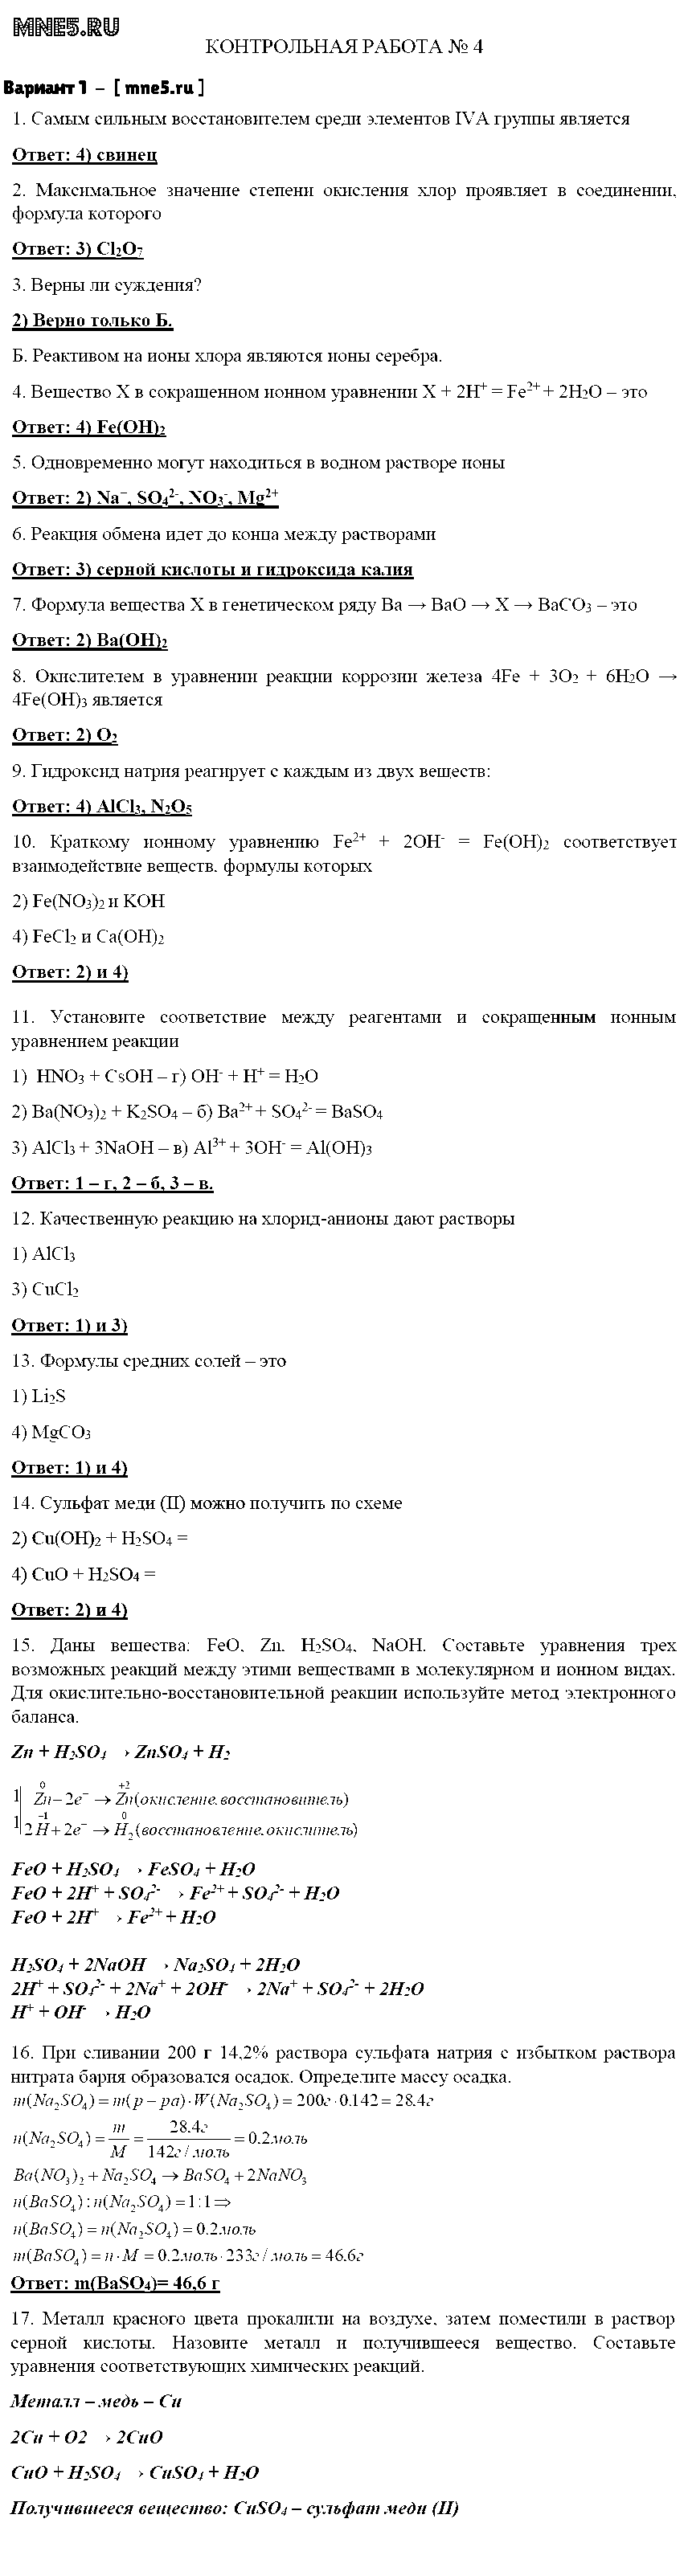 ГДЗ Химия 8 класс - Вариант 1